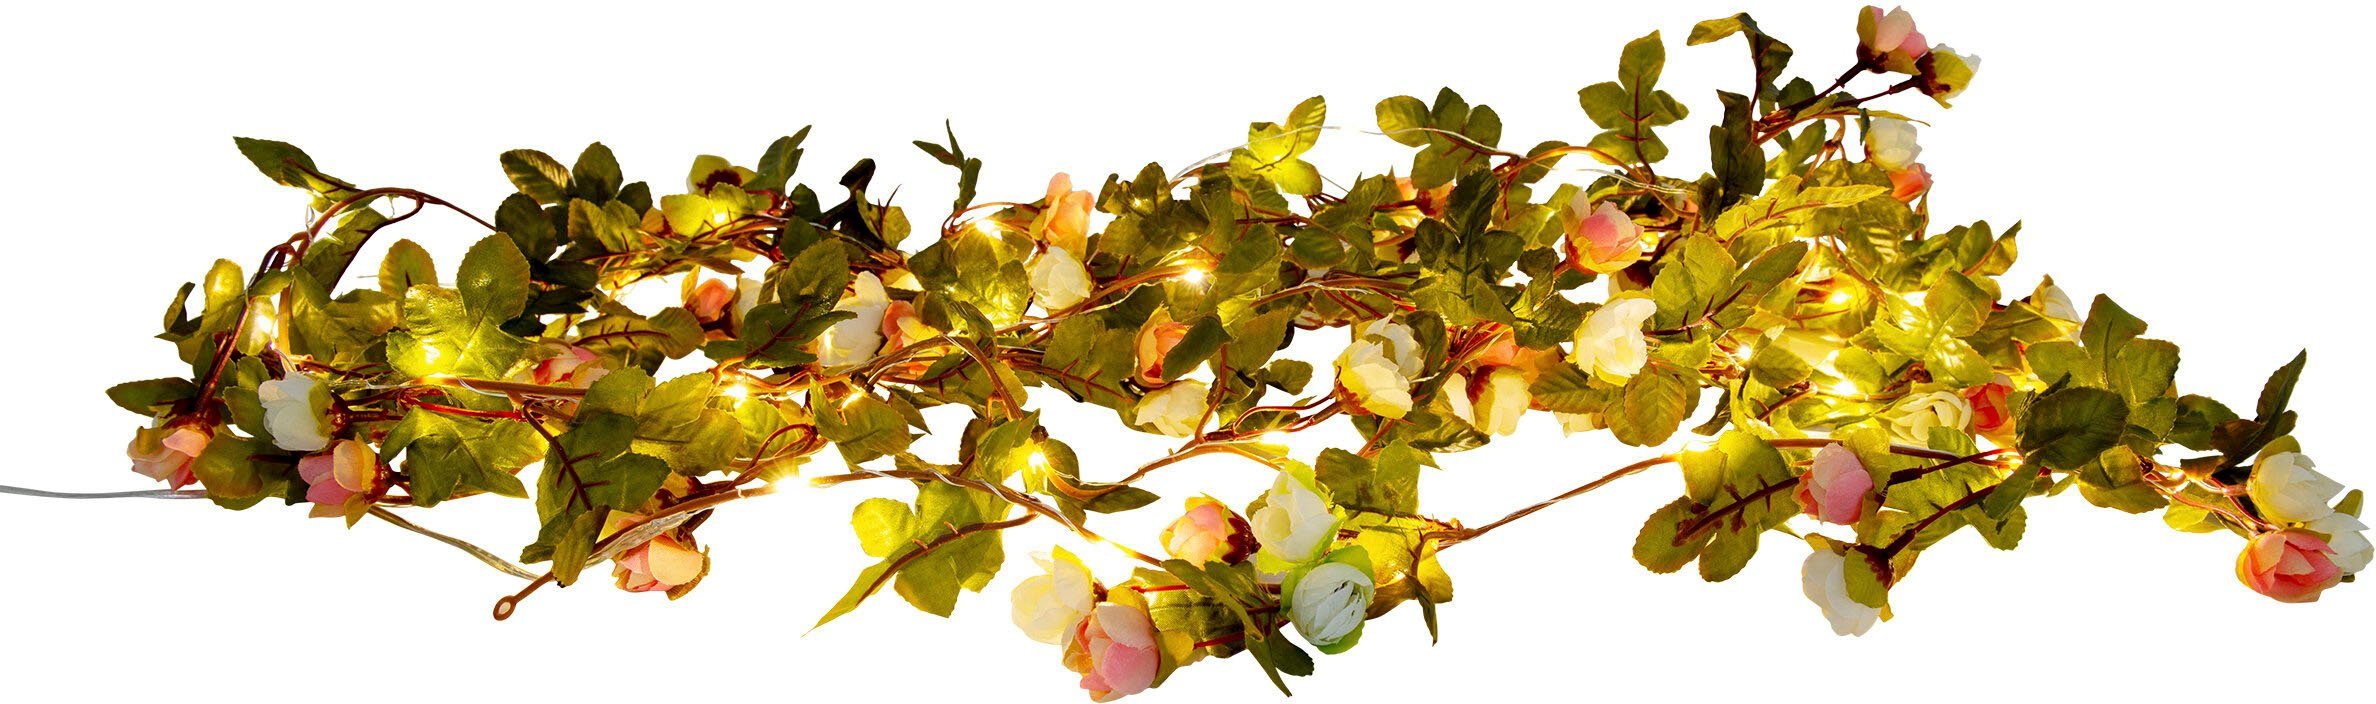 Zuleitung rosa Rosenblüten, Röschen, und LED, näve 420cm, warmweiße 5m weiße Länge LED-Lichterkette